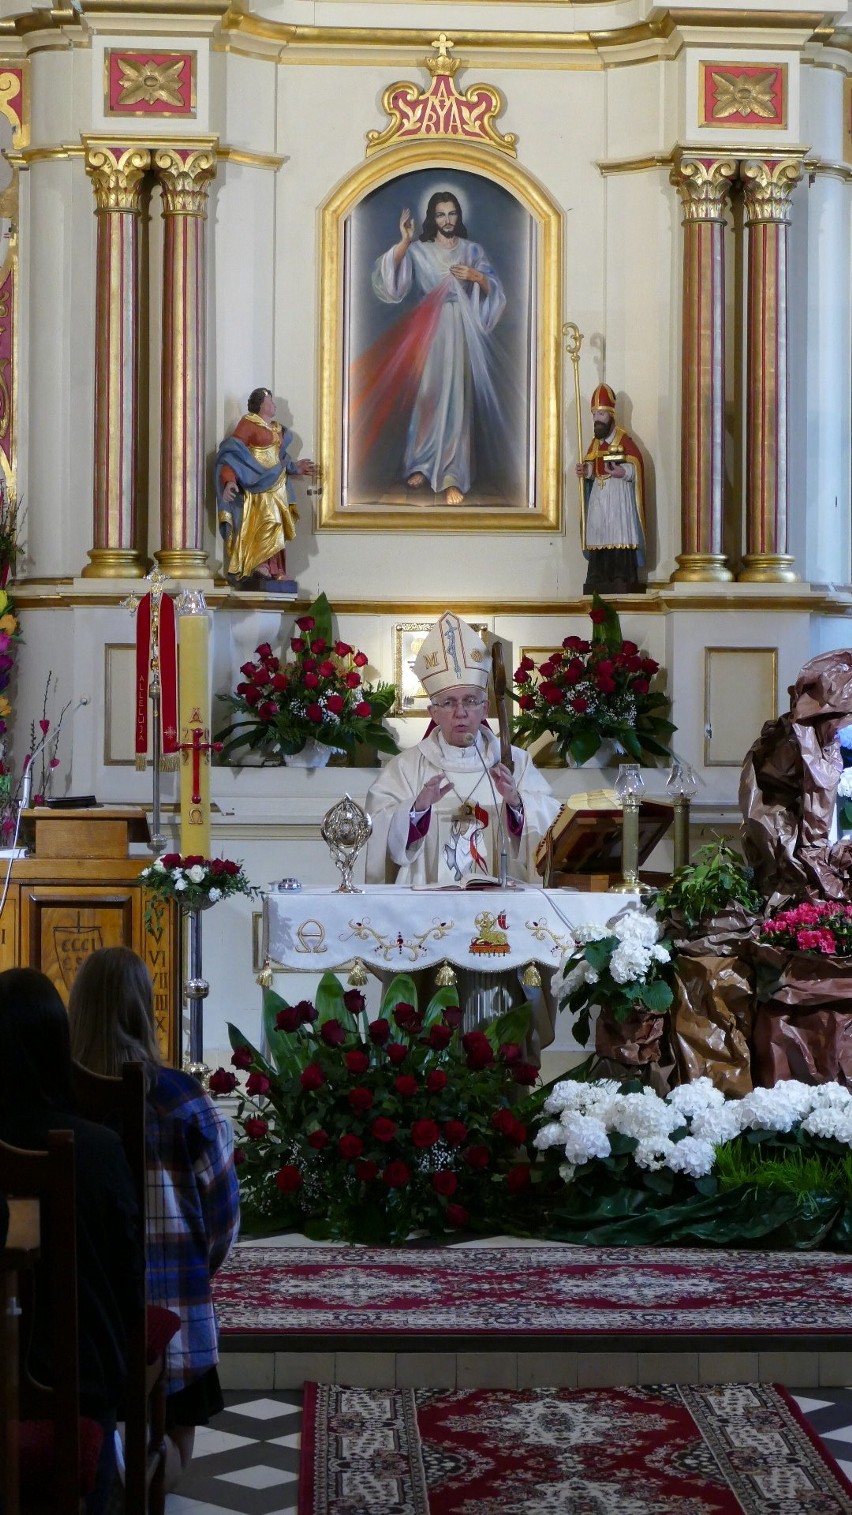 Wprowadzenie relikwii świętej siostry Faustyny w Dąbrowie z udziałem arcybiskupa. Zobaczcie zdjęcia